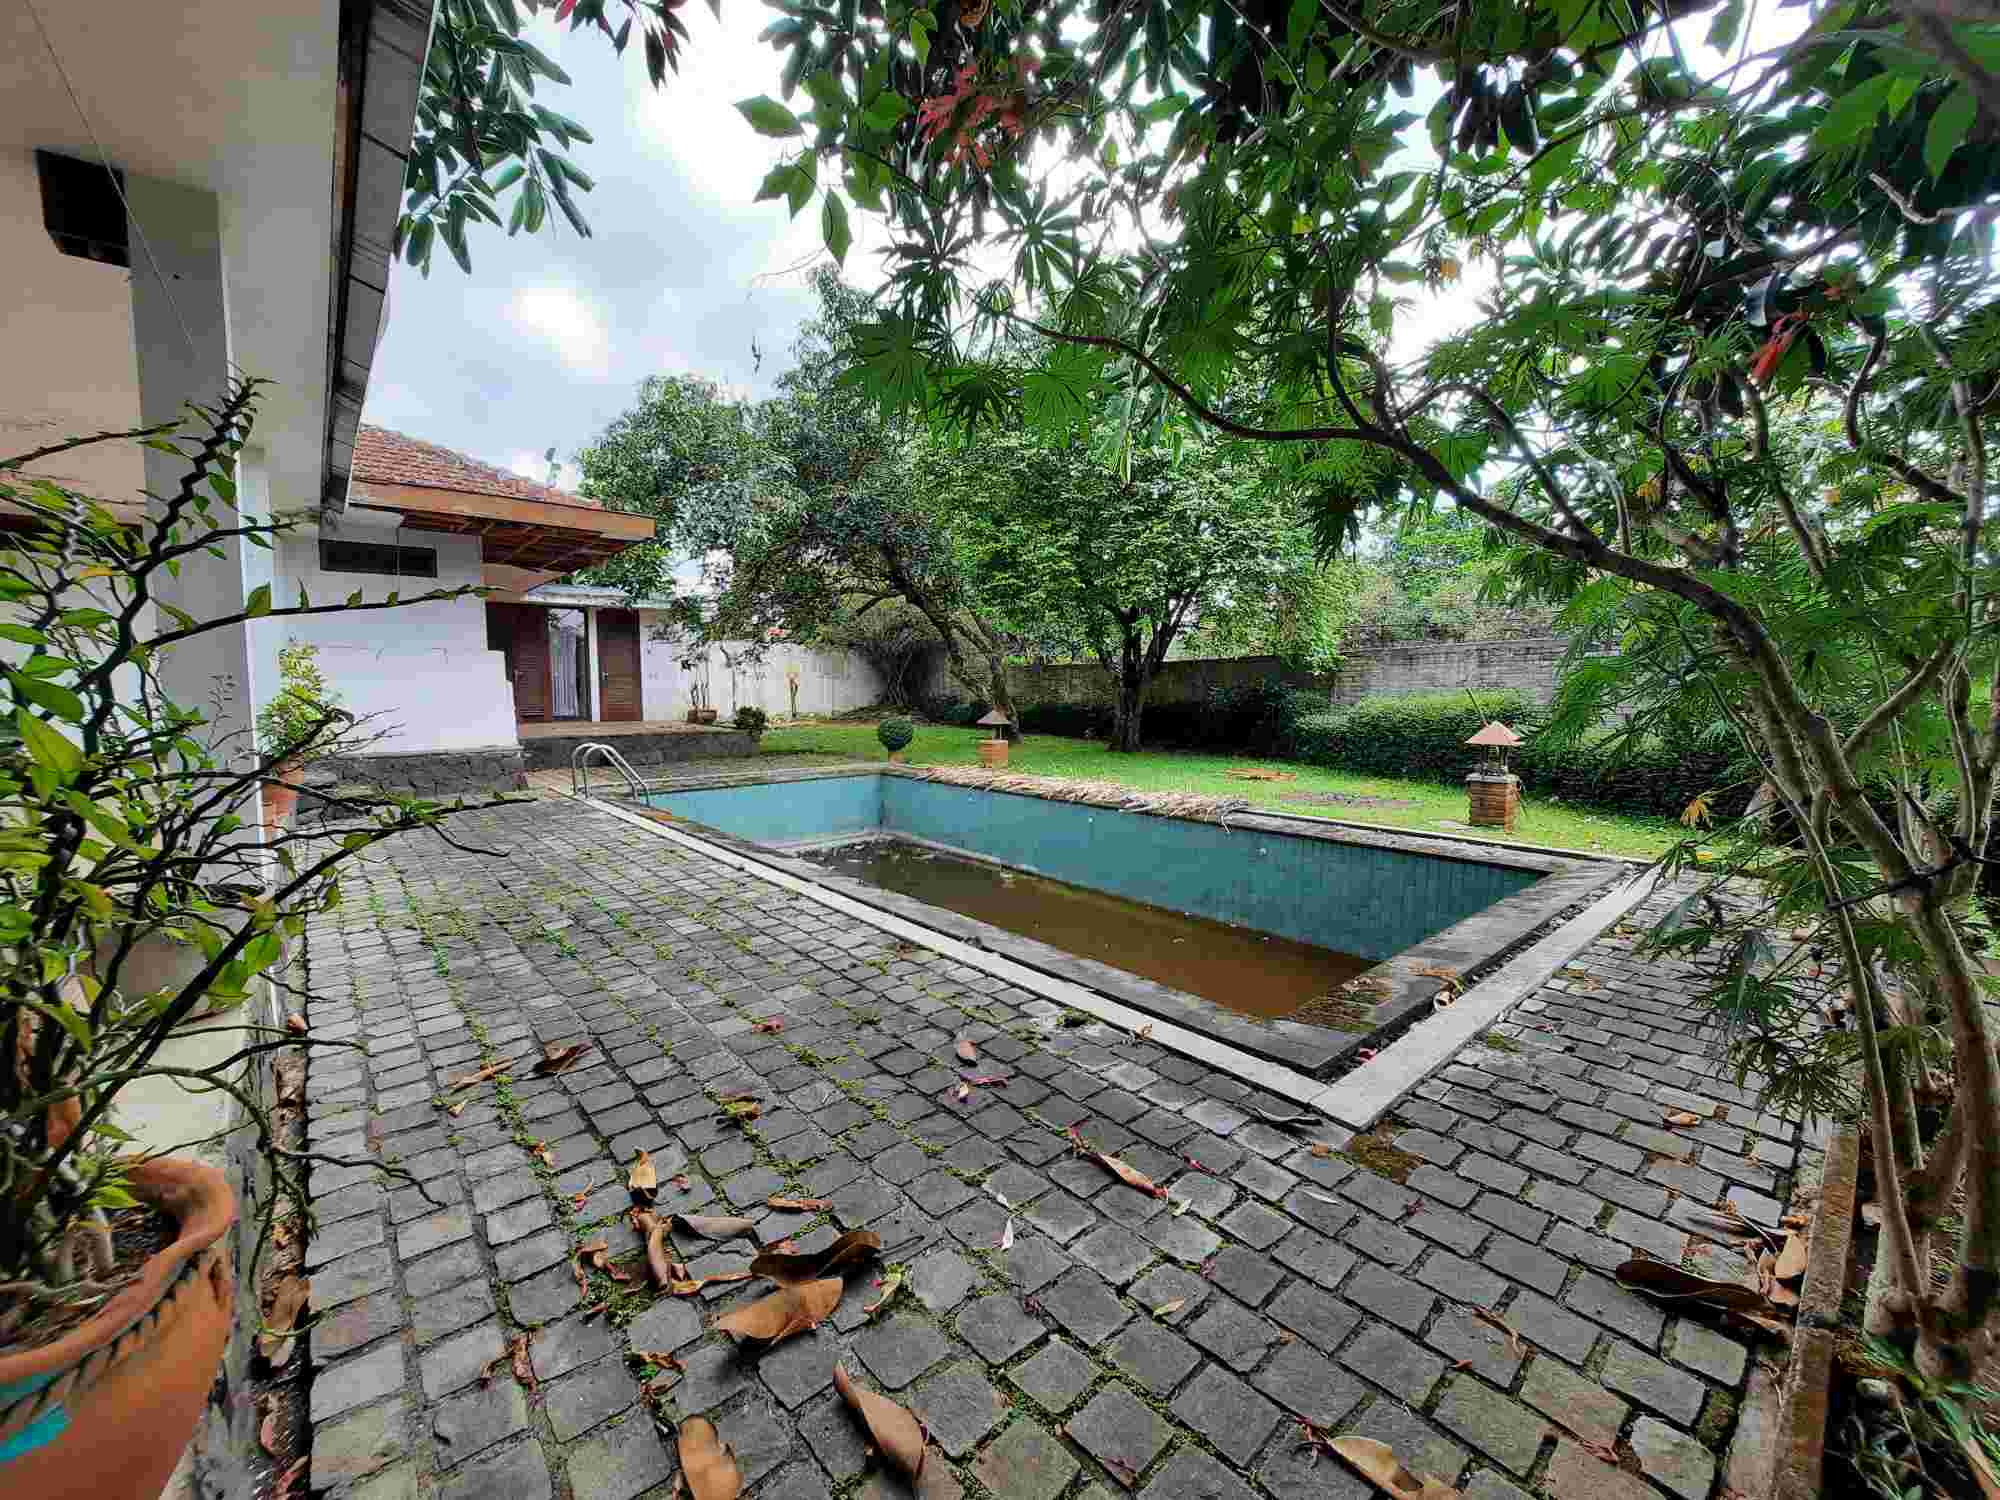 Rumah Posisi Hoek Hitung Harga Tanah hanya 2 belokan dari Universitas Parahyangan, Ciumbuleuit, Bandung Utara